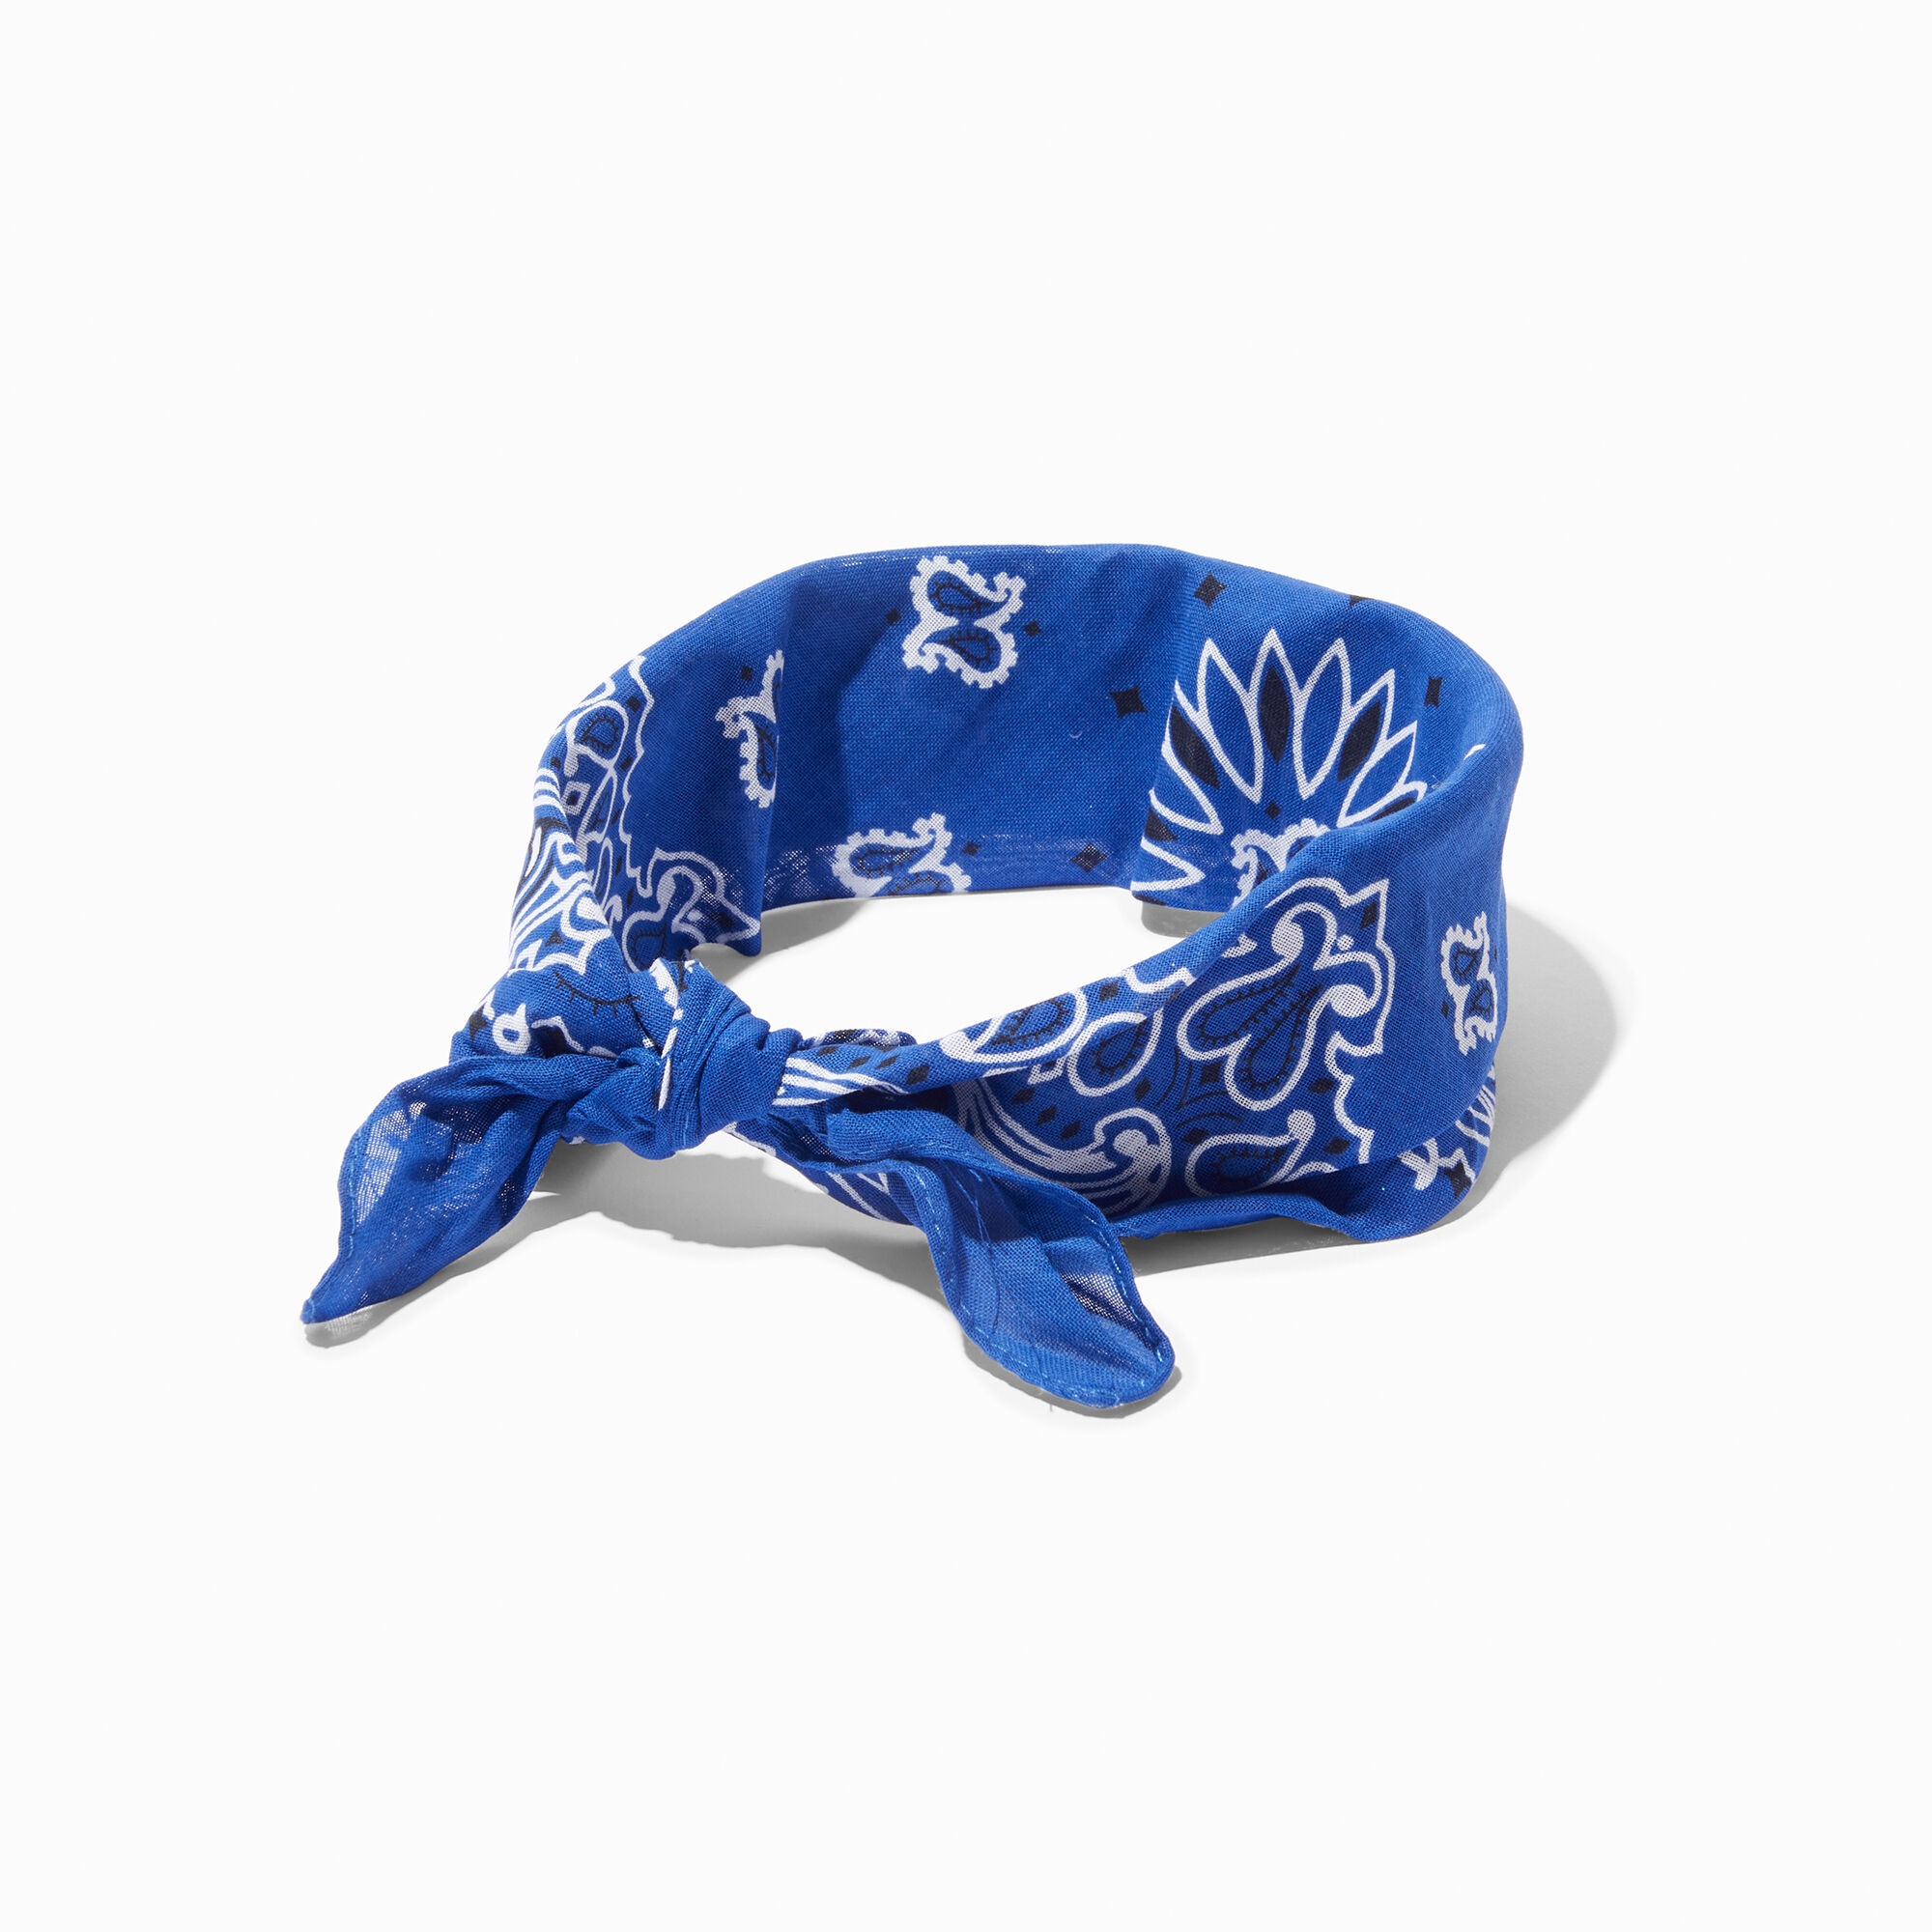 View Claires Paisley Bandana Headwrap Royal Bracelet Blue information